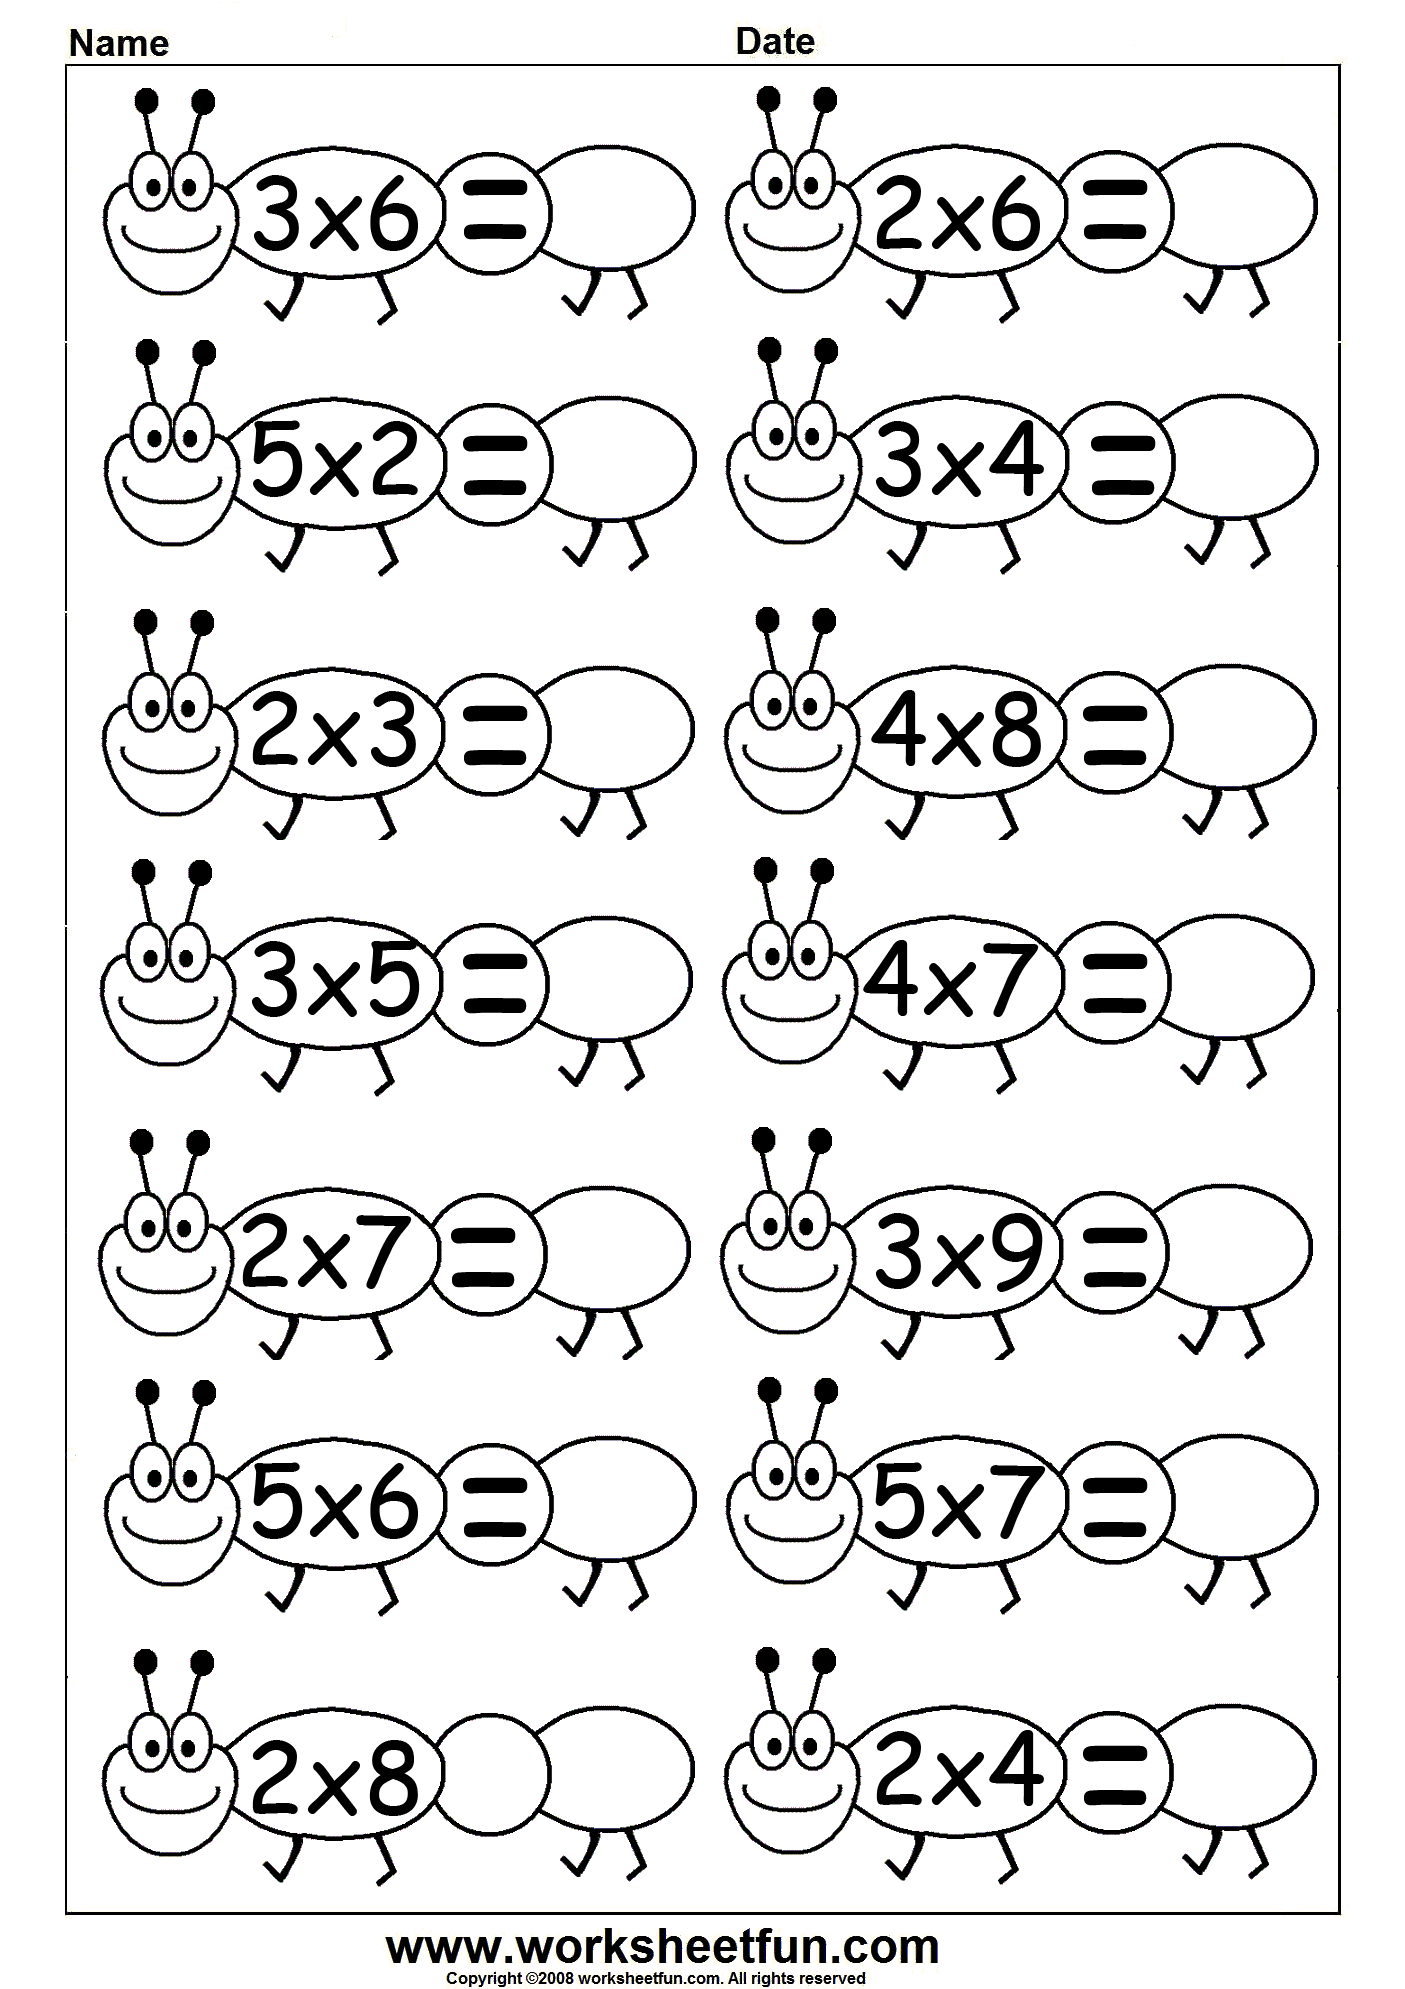 multiplication-6-worksheets-free-printable-worksheets-worksheetfun